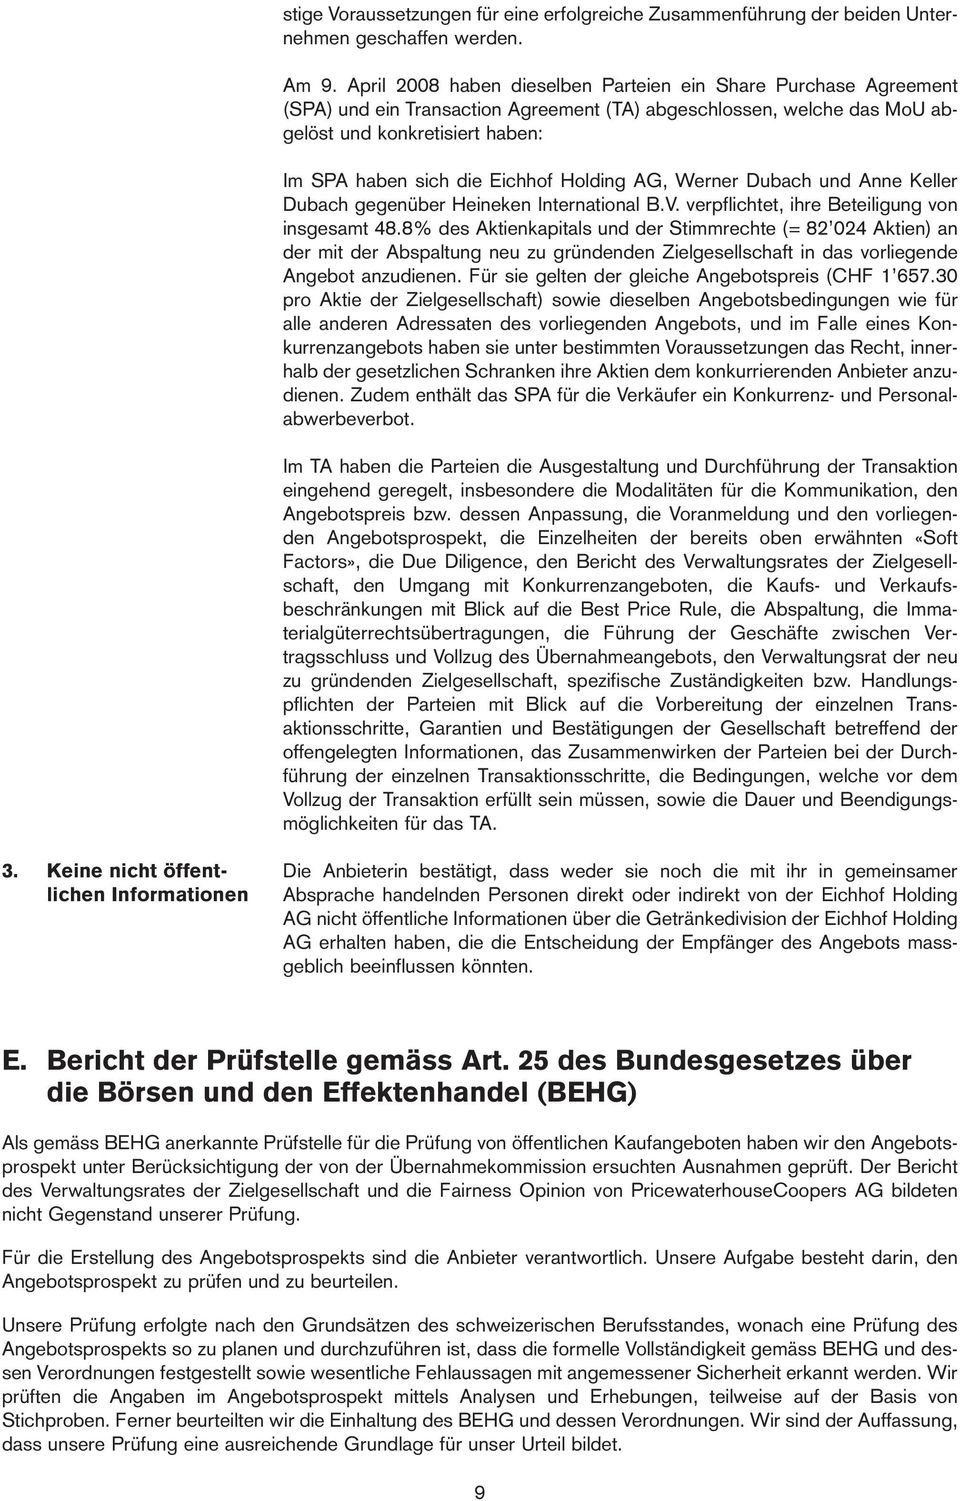 Holding AG, Werner Dubach und Anne Keller Dubach gegenüber Heineken International B.V. verpflichtet, ihre Beteiligung von insgesamt 48.